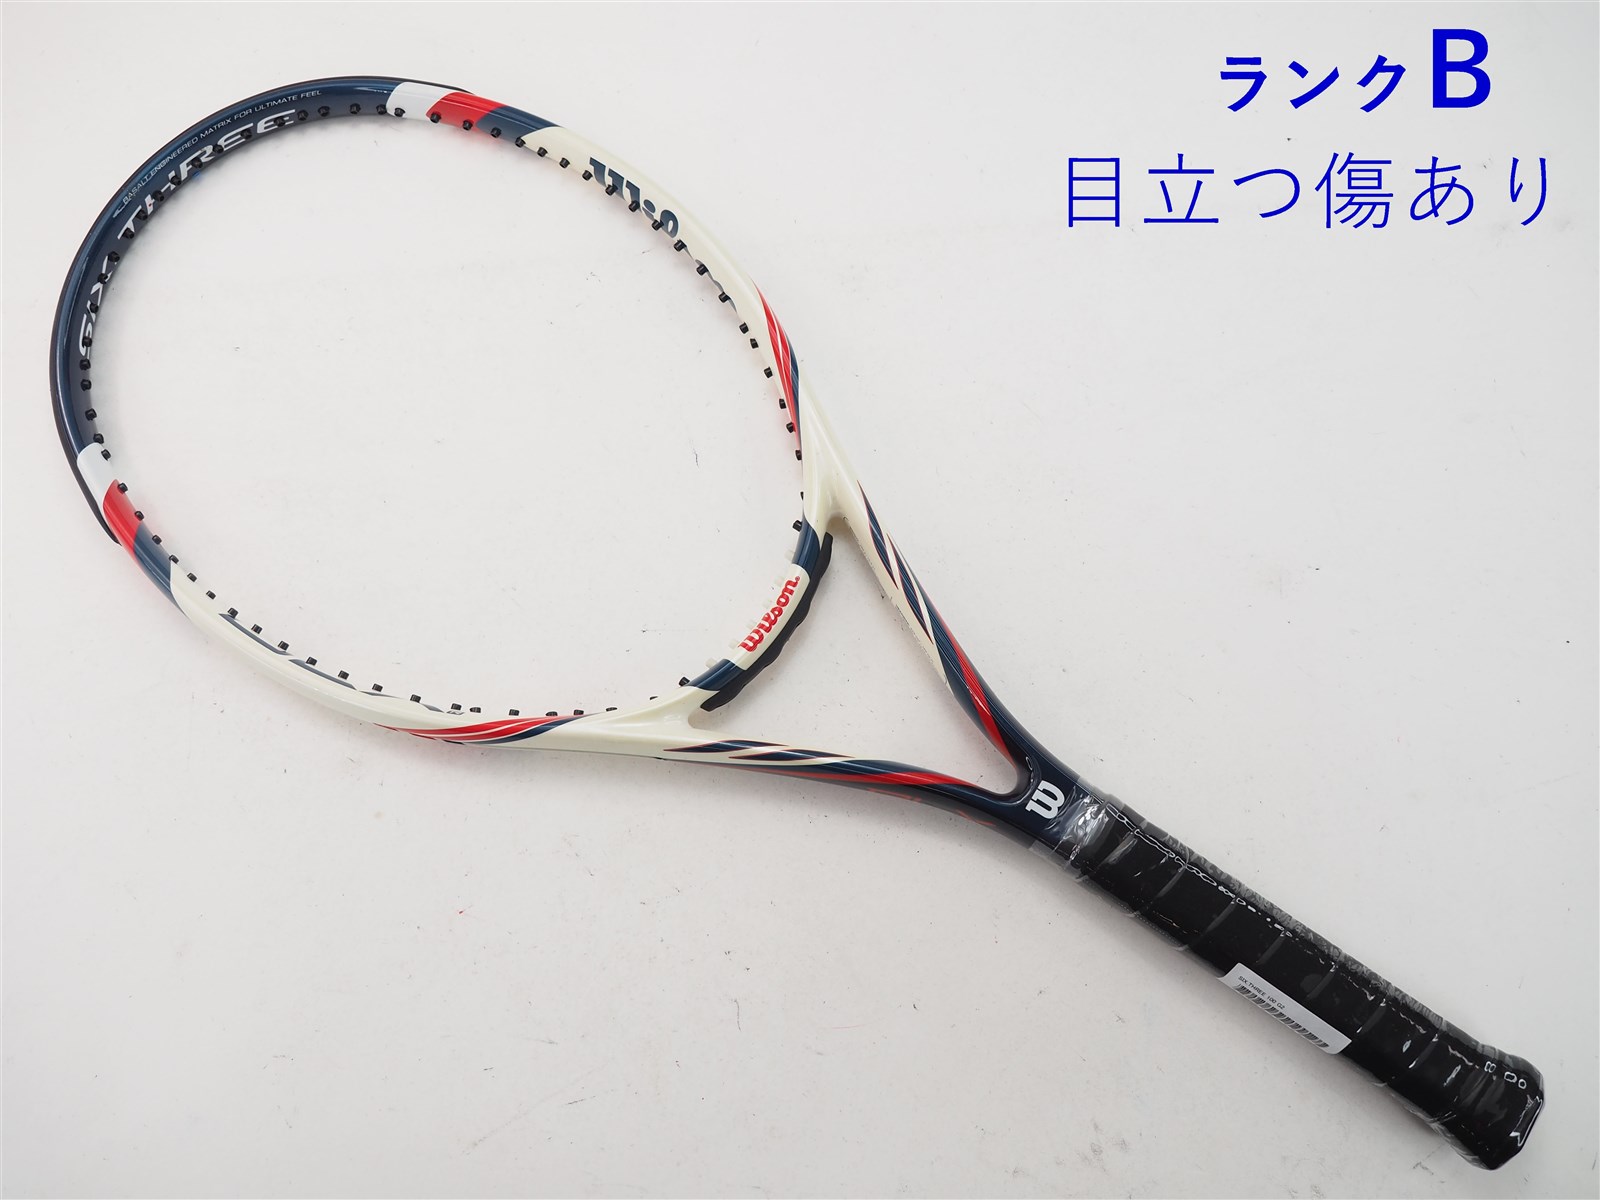 テニスラケット ウィルソン シックススリー100 (G1)WILSON 100